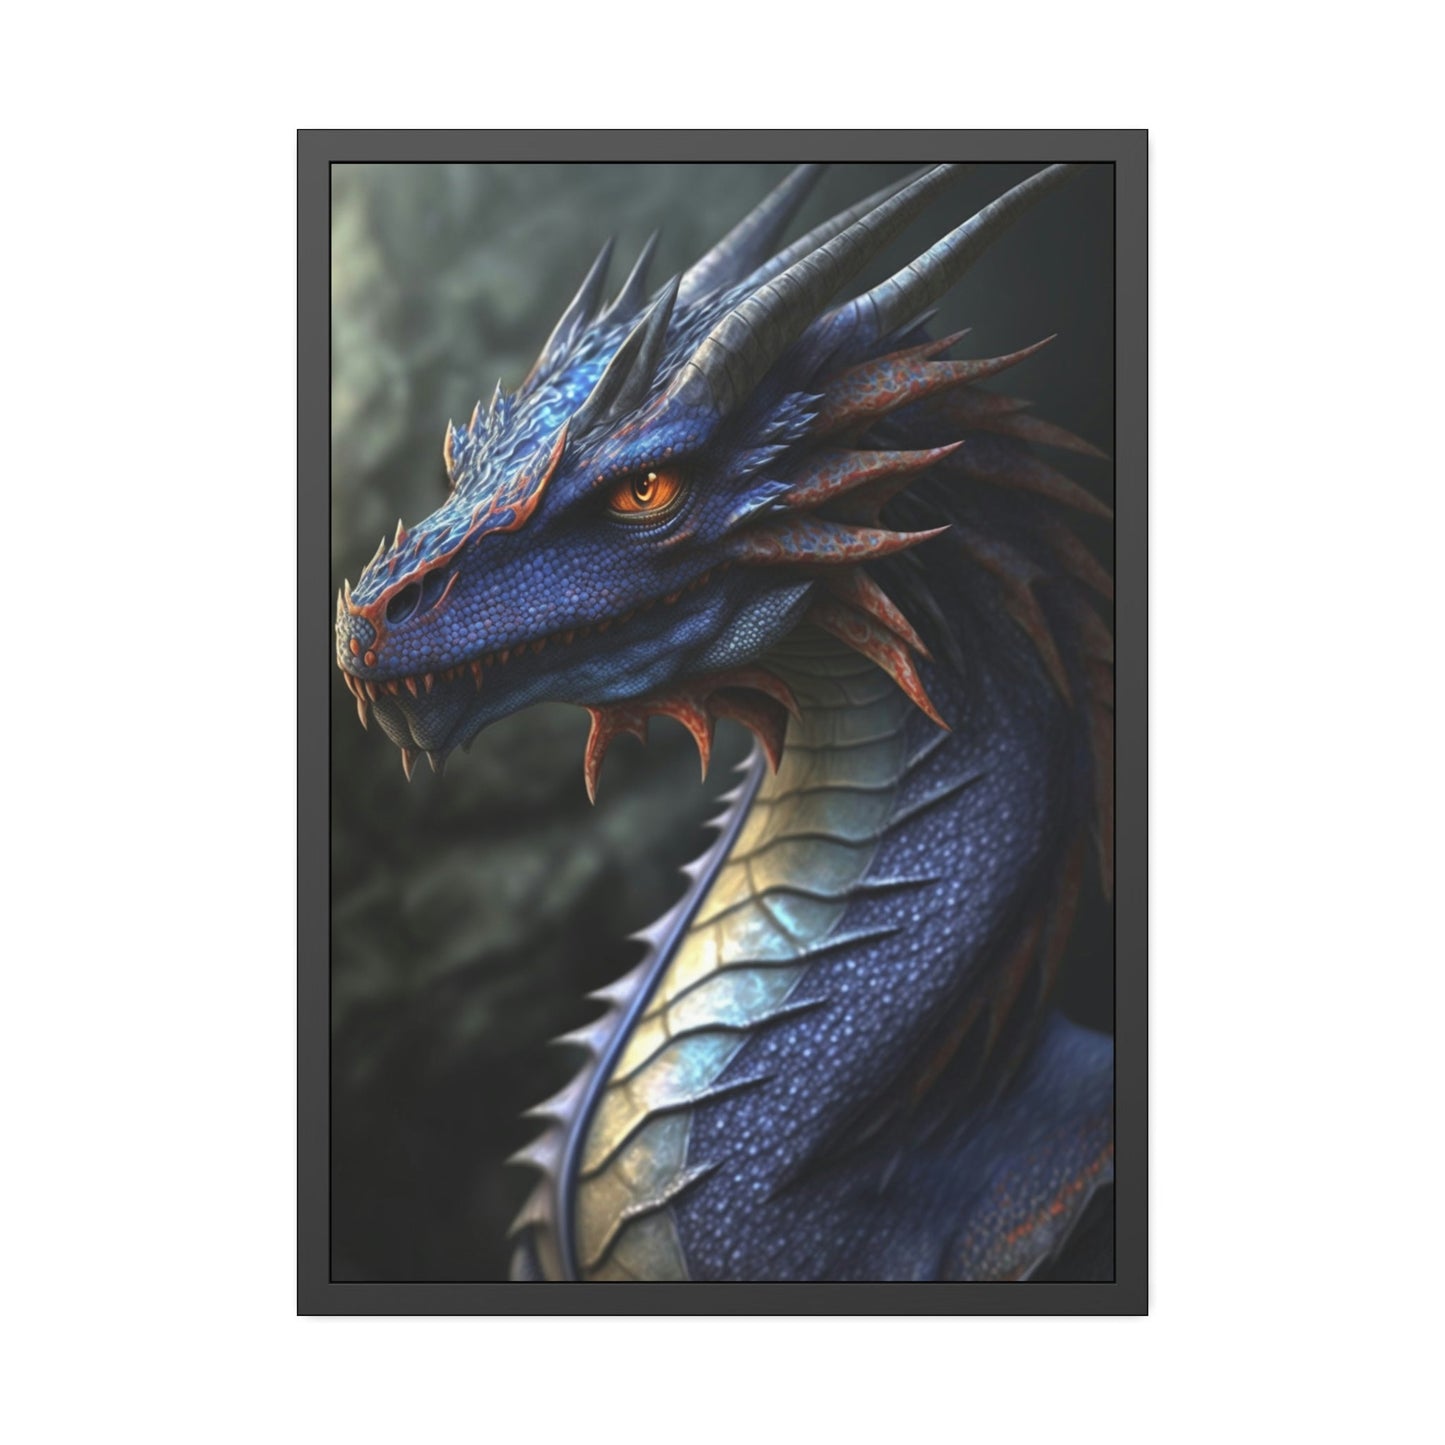 Dragon's Secret: A Treasure of Lore